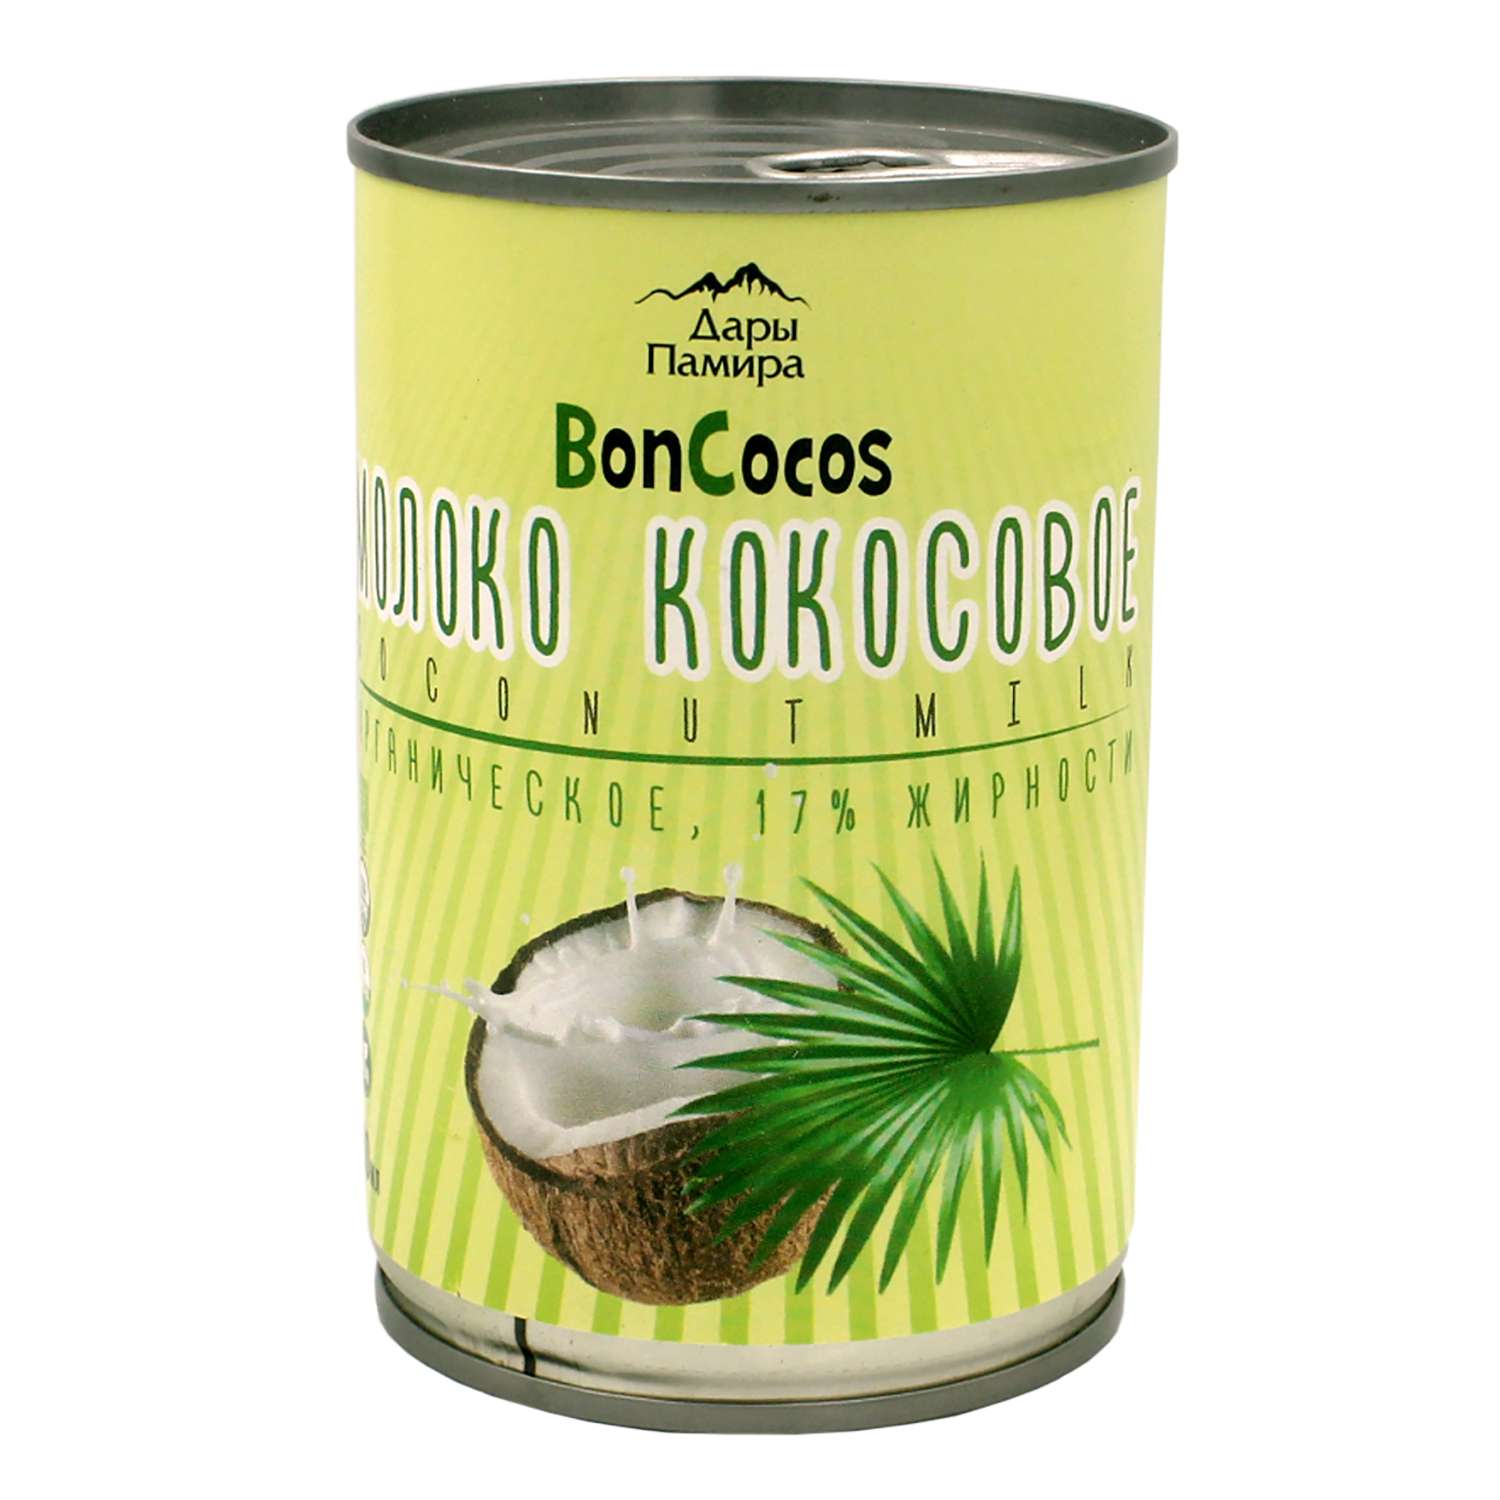 Молоко Дары Памира Boncocos Organic кокосовое 17% 400мл - фото 1